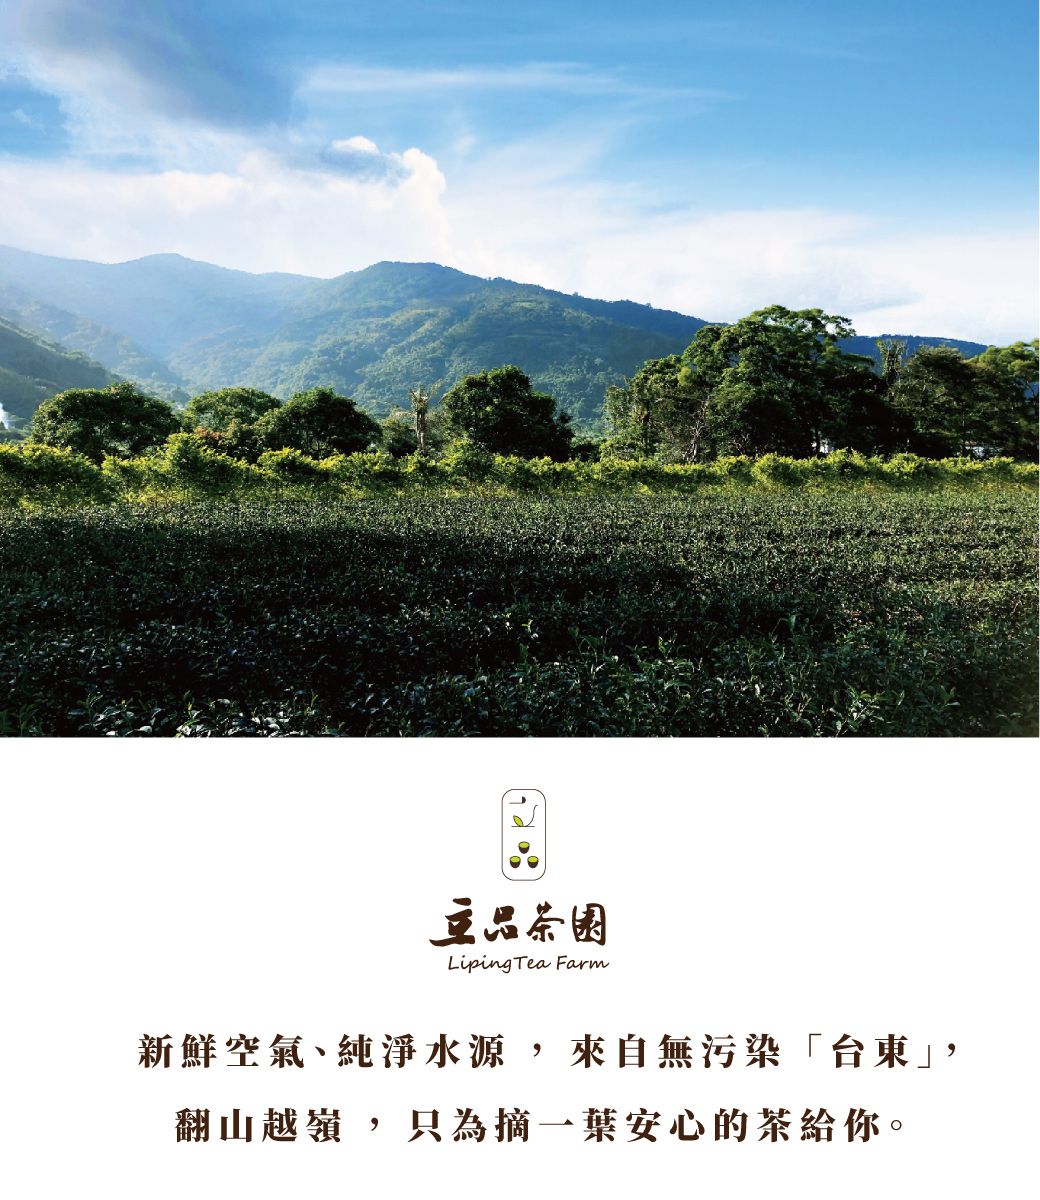 品Liping Tea Farm新鮮空氣、純淨水源,來自無污染「台」,翻山越嶺,只為摘安心的茶給你。